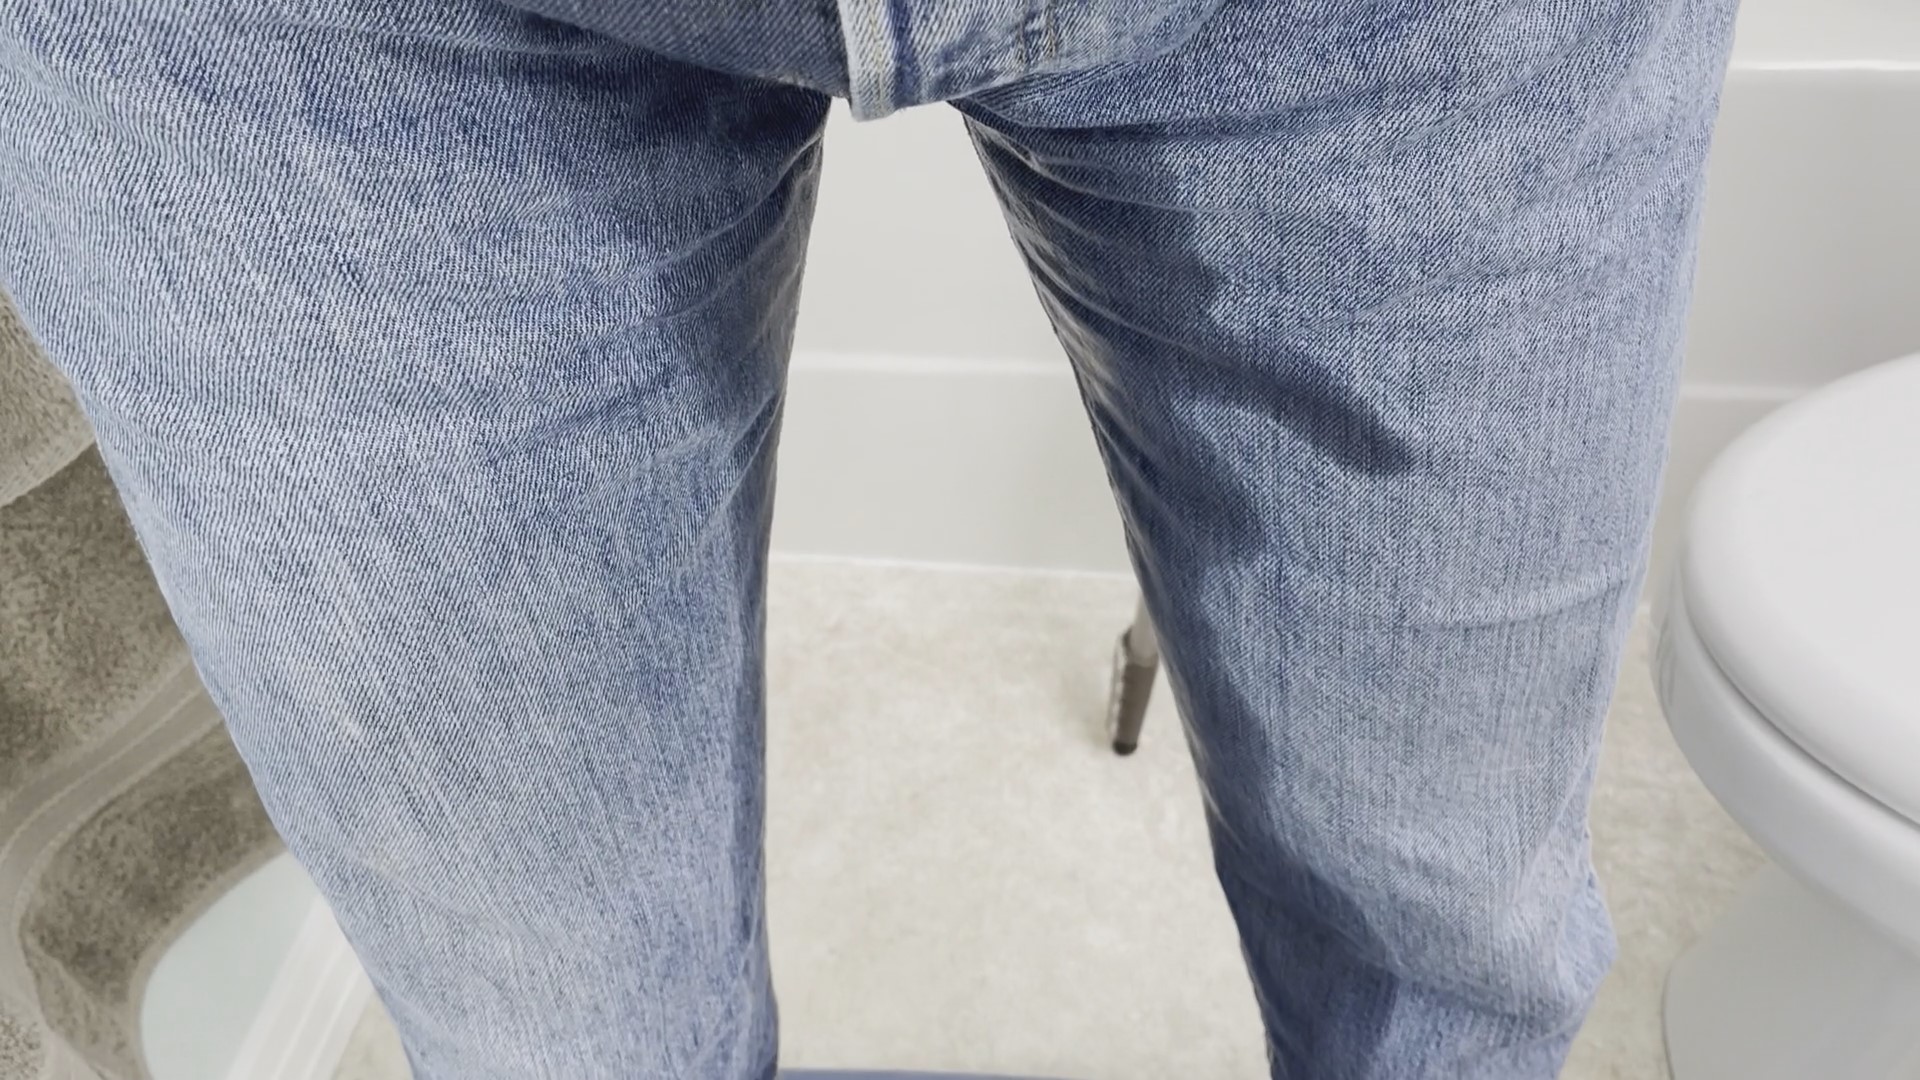 Wet my levis in the bathroom